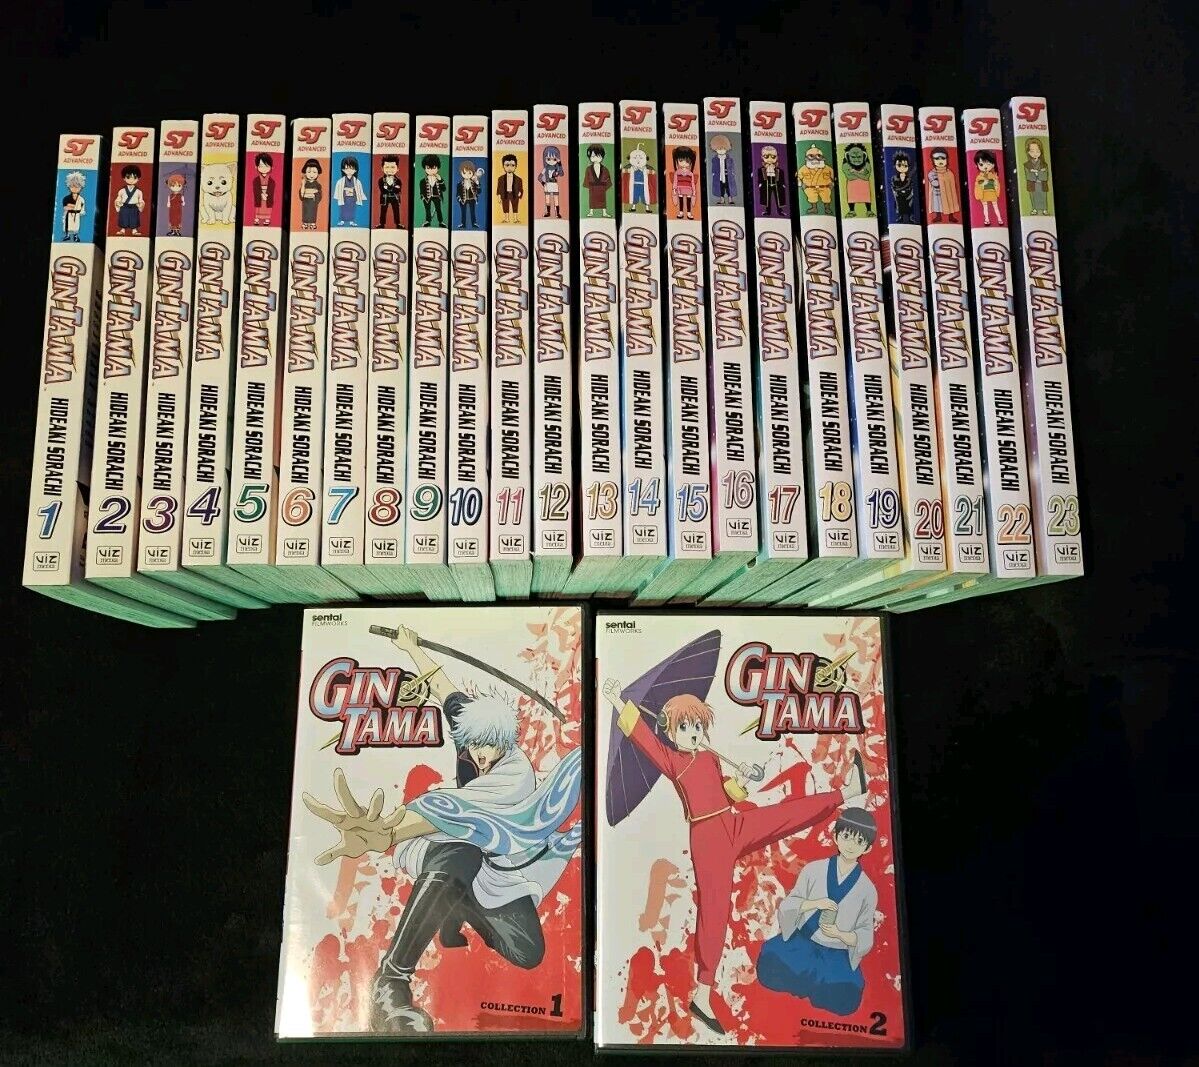 Gintama Manga Volumes 1-23 ENGLISH + Collection 1-2 DVD